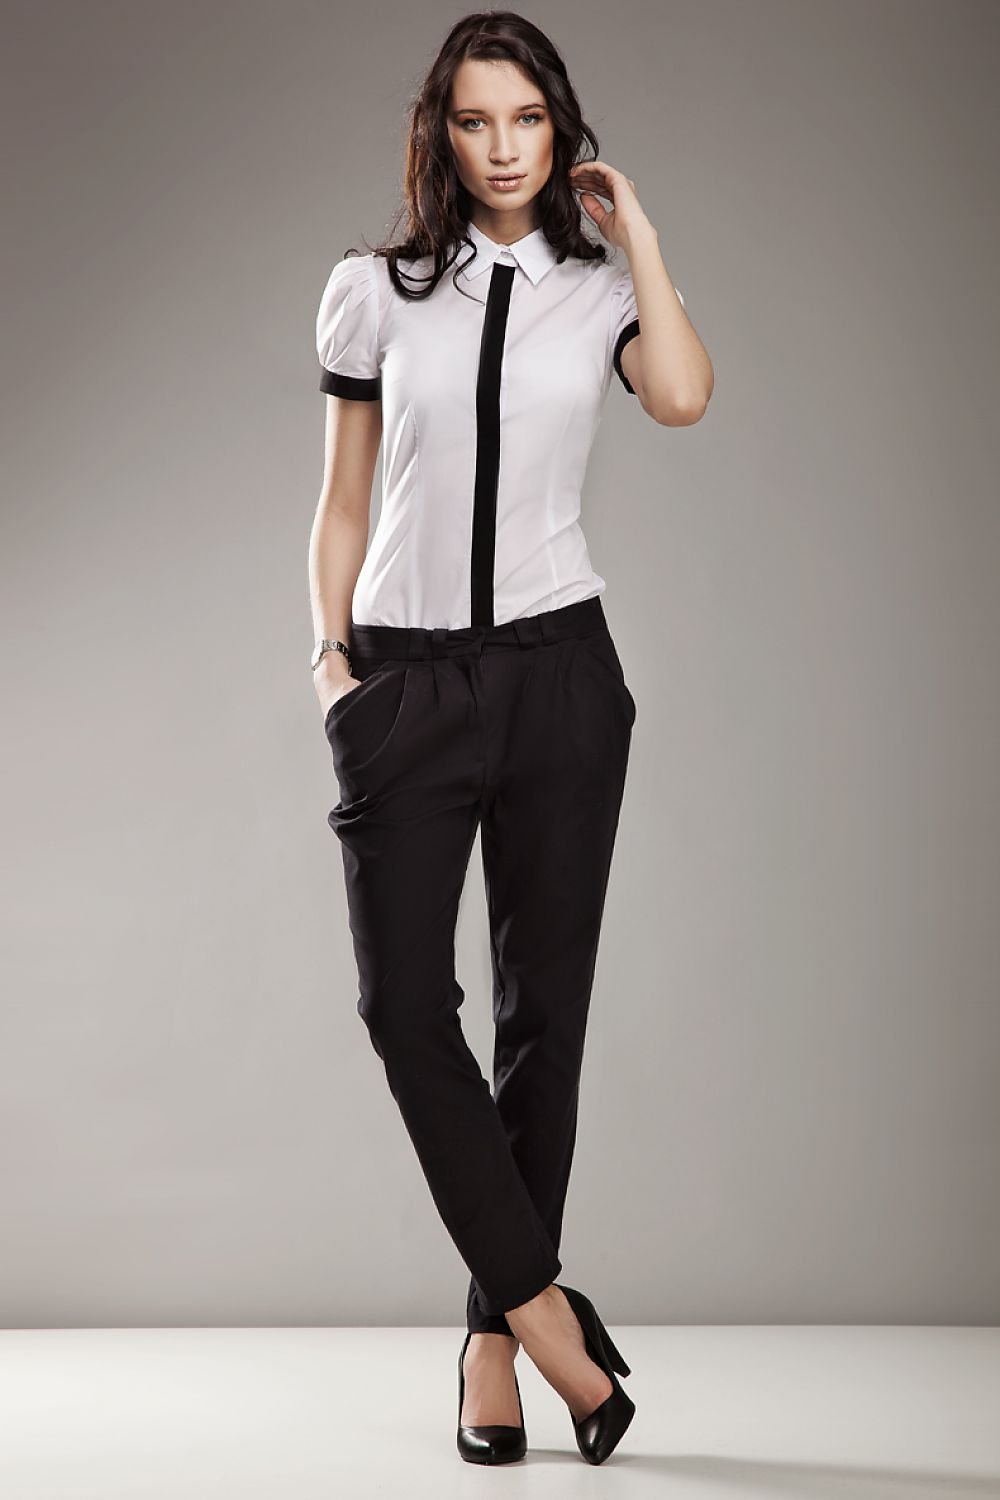 Черные брюки и блузка. Классическая одежда для девушек. Строгая одежда для девушек. Девушка в офисной одежде. Классический стиль одежды для девушек.